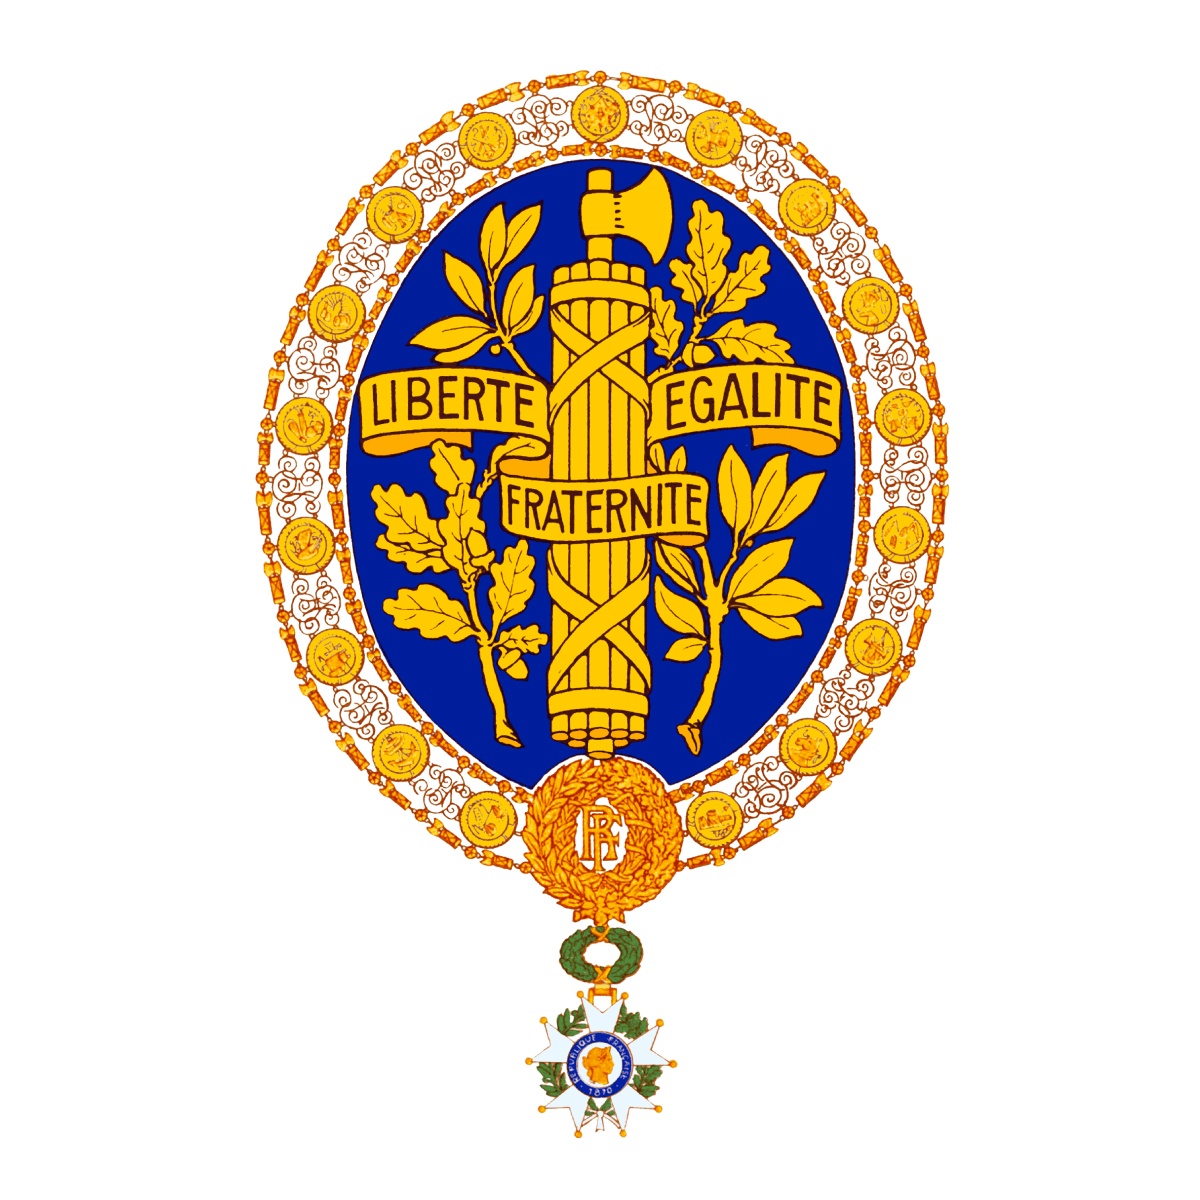 Пятой французской республики. Пятая Республика во Франции герб. Государственный герб Франции. Герб третьей французской Республики. Герб французской Республики 1789.